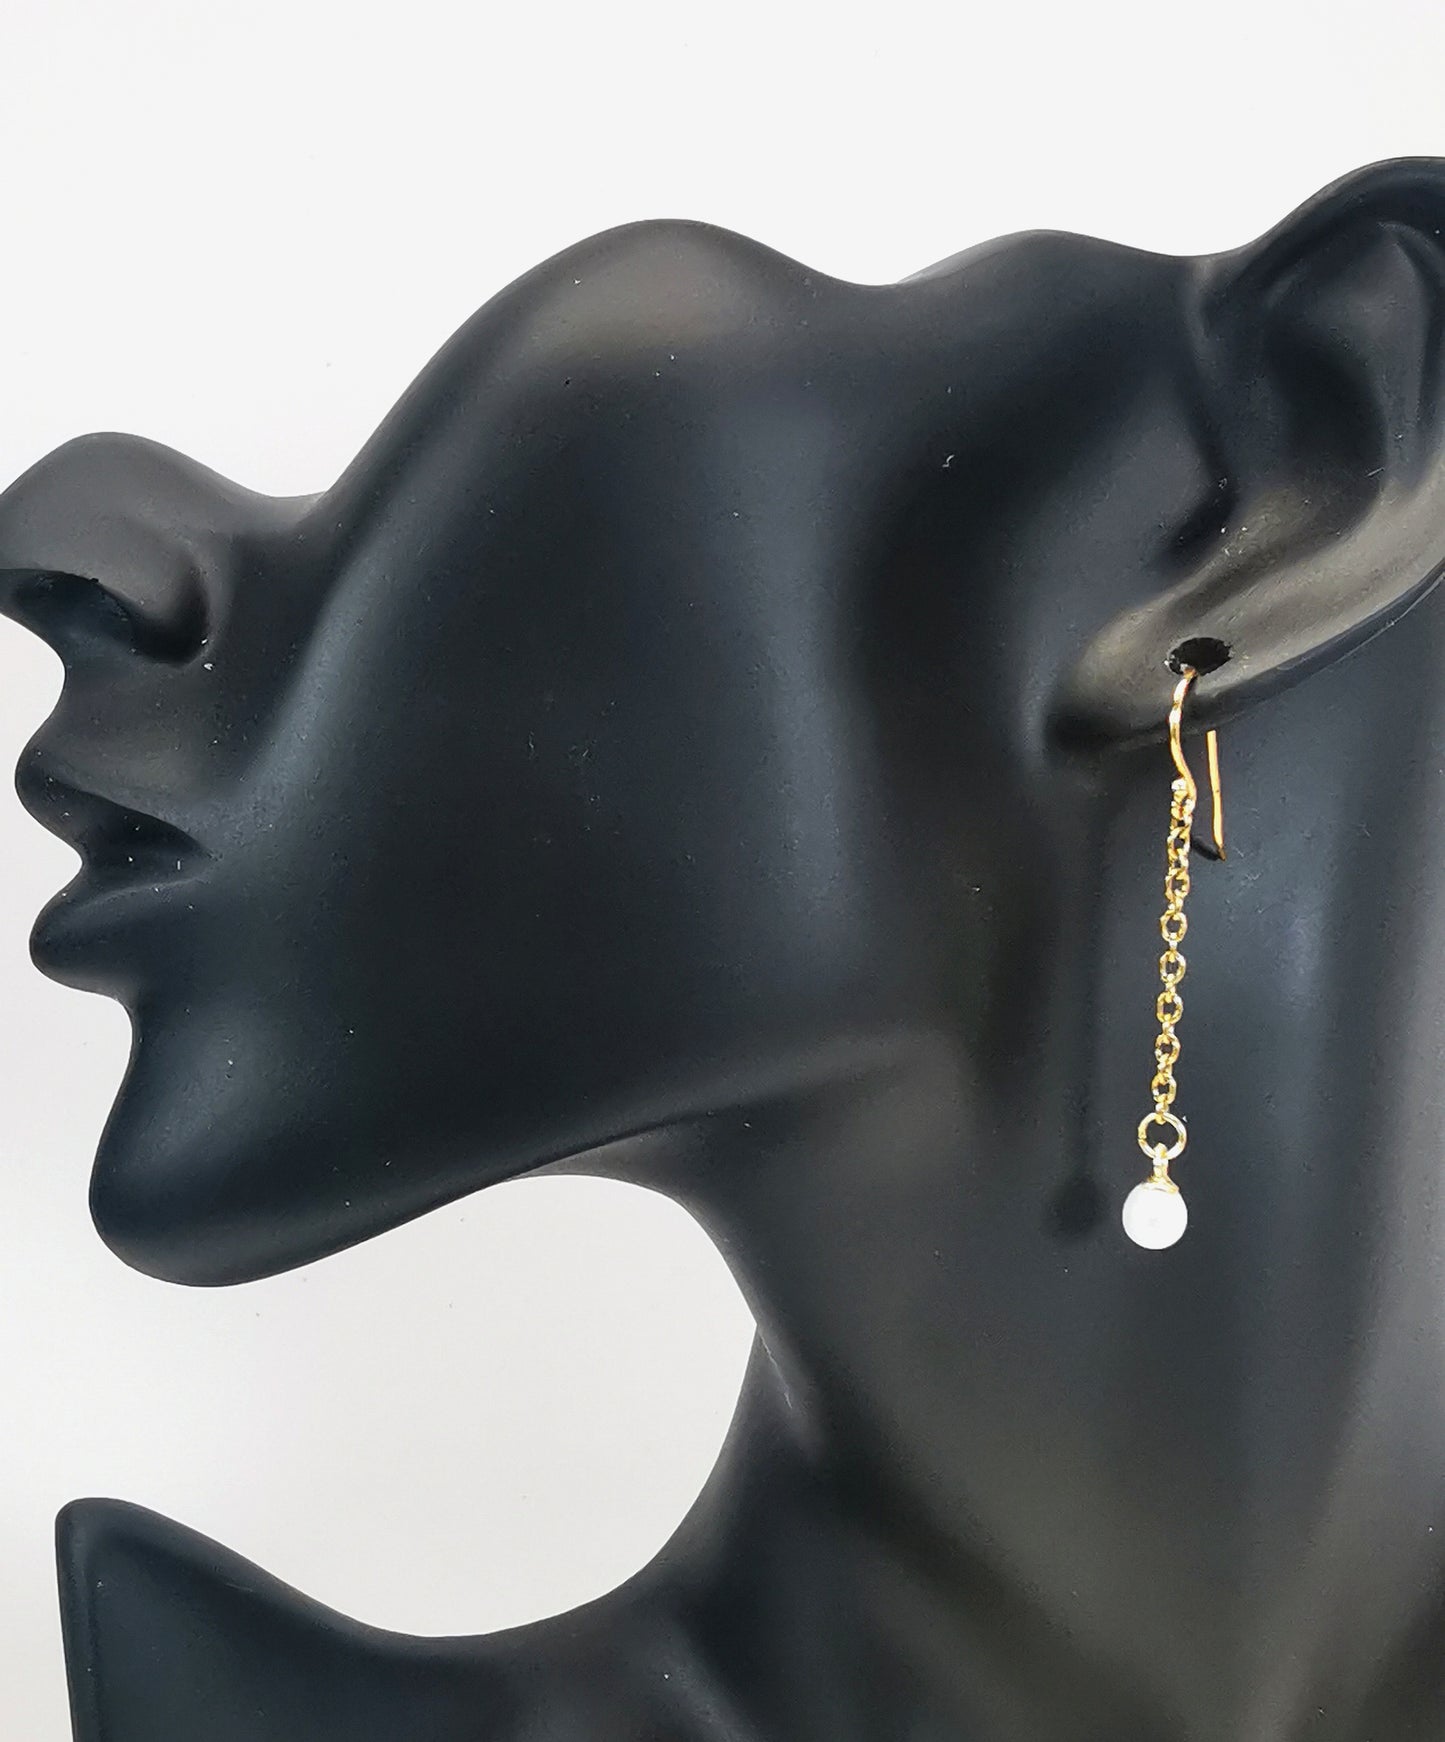 Boucles d'oreilles perles de culture blanches rondes 5mm sur pendants et chaînes plaqués or. Représentées par une boucle accrochée à une oreille de mannequin buste noir. Vue de coté en plan large.